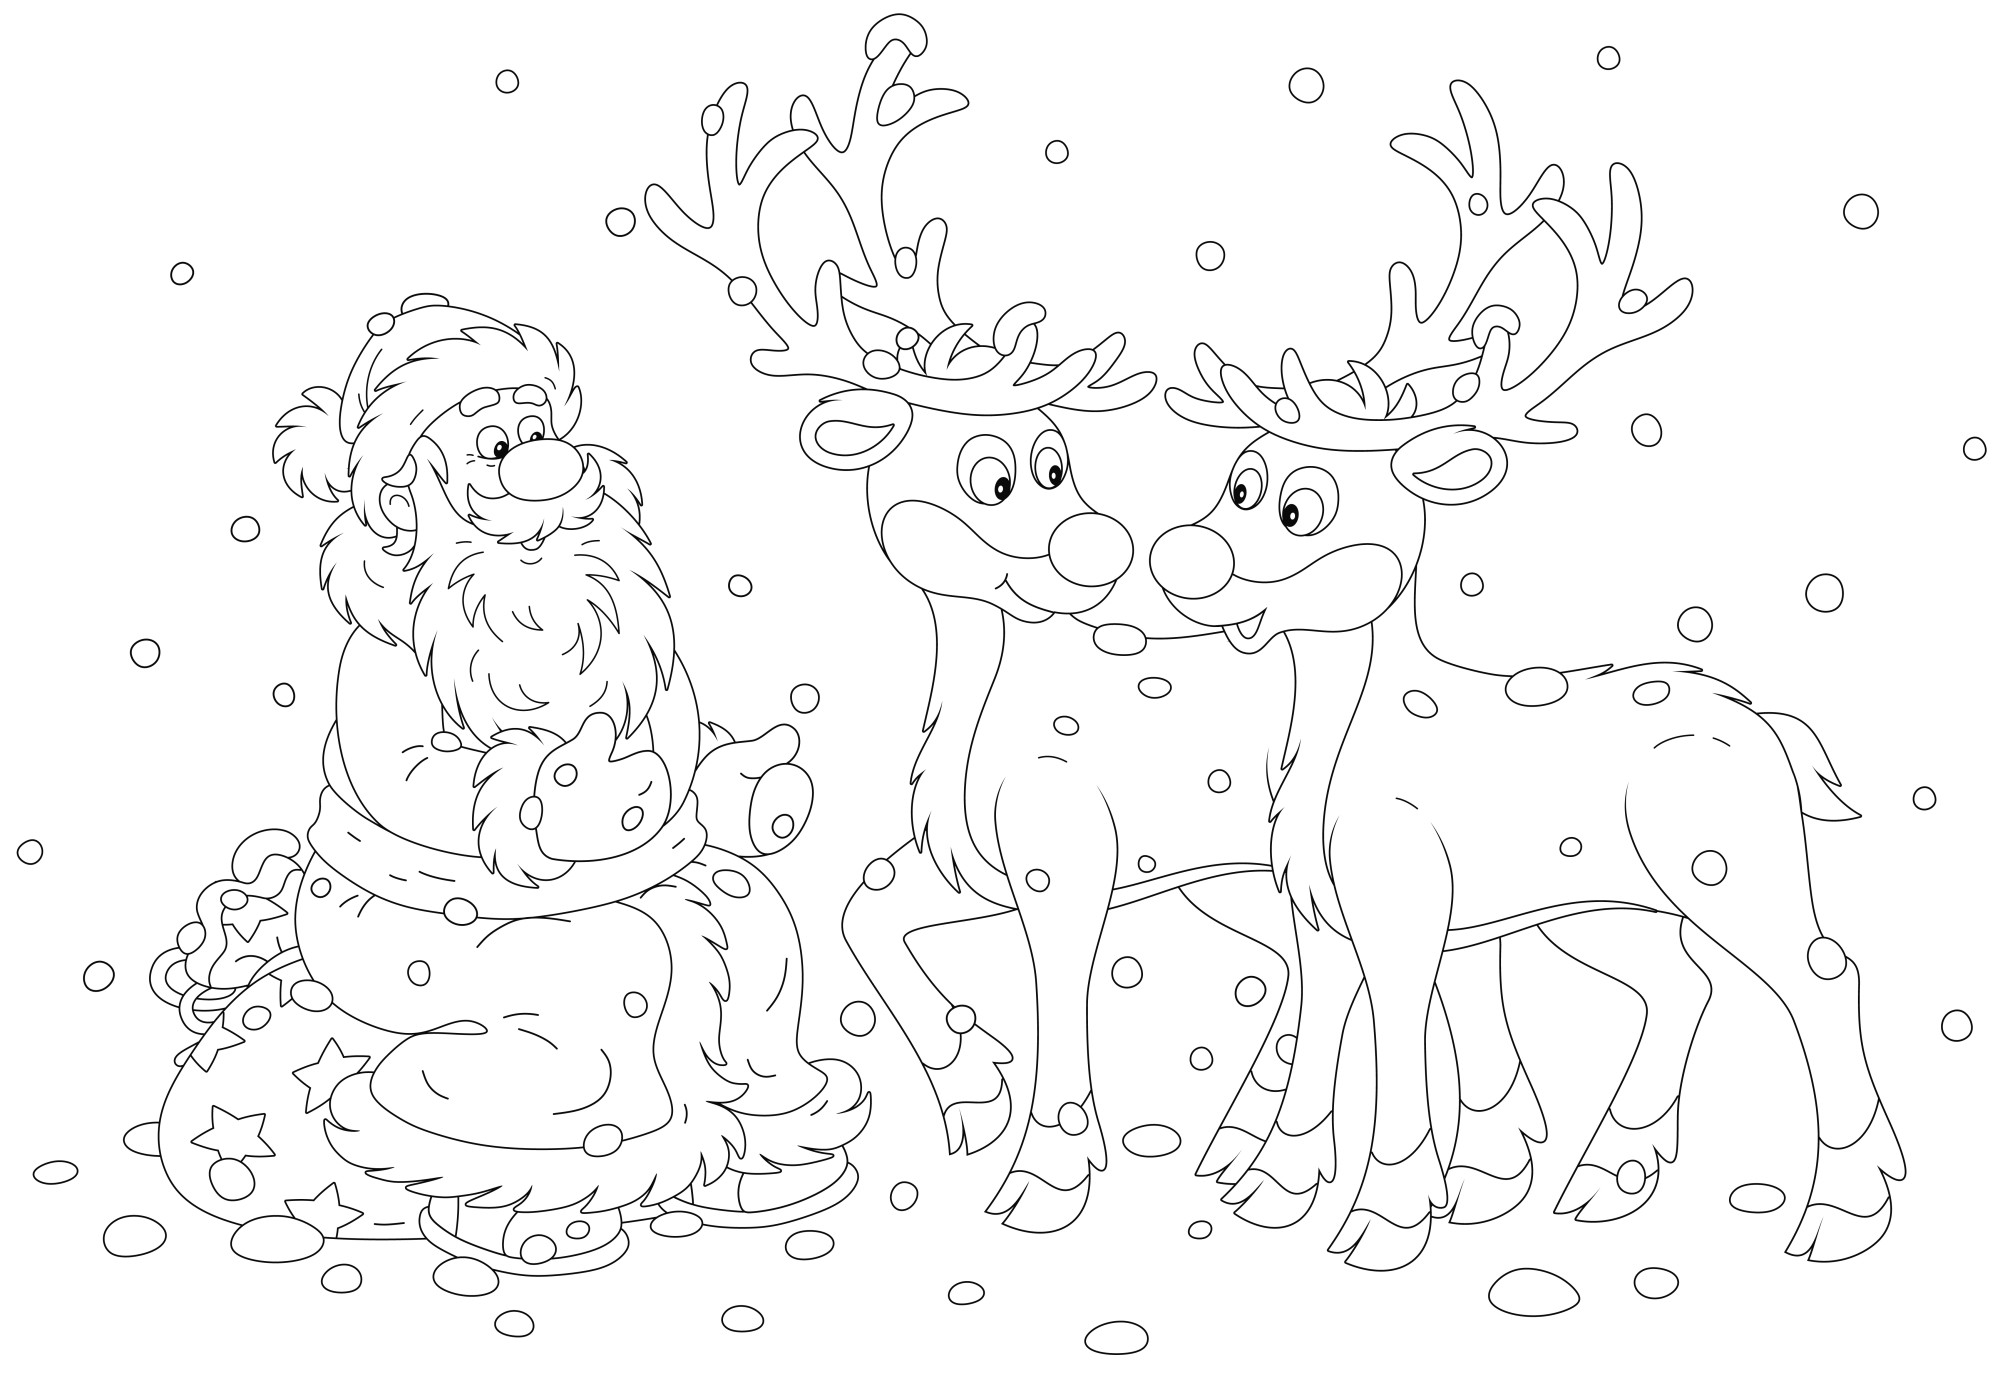 Раскраска для детей: дед мороз сидит на мешке с подарками рядом с оленями